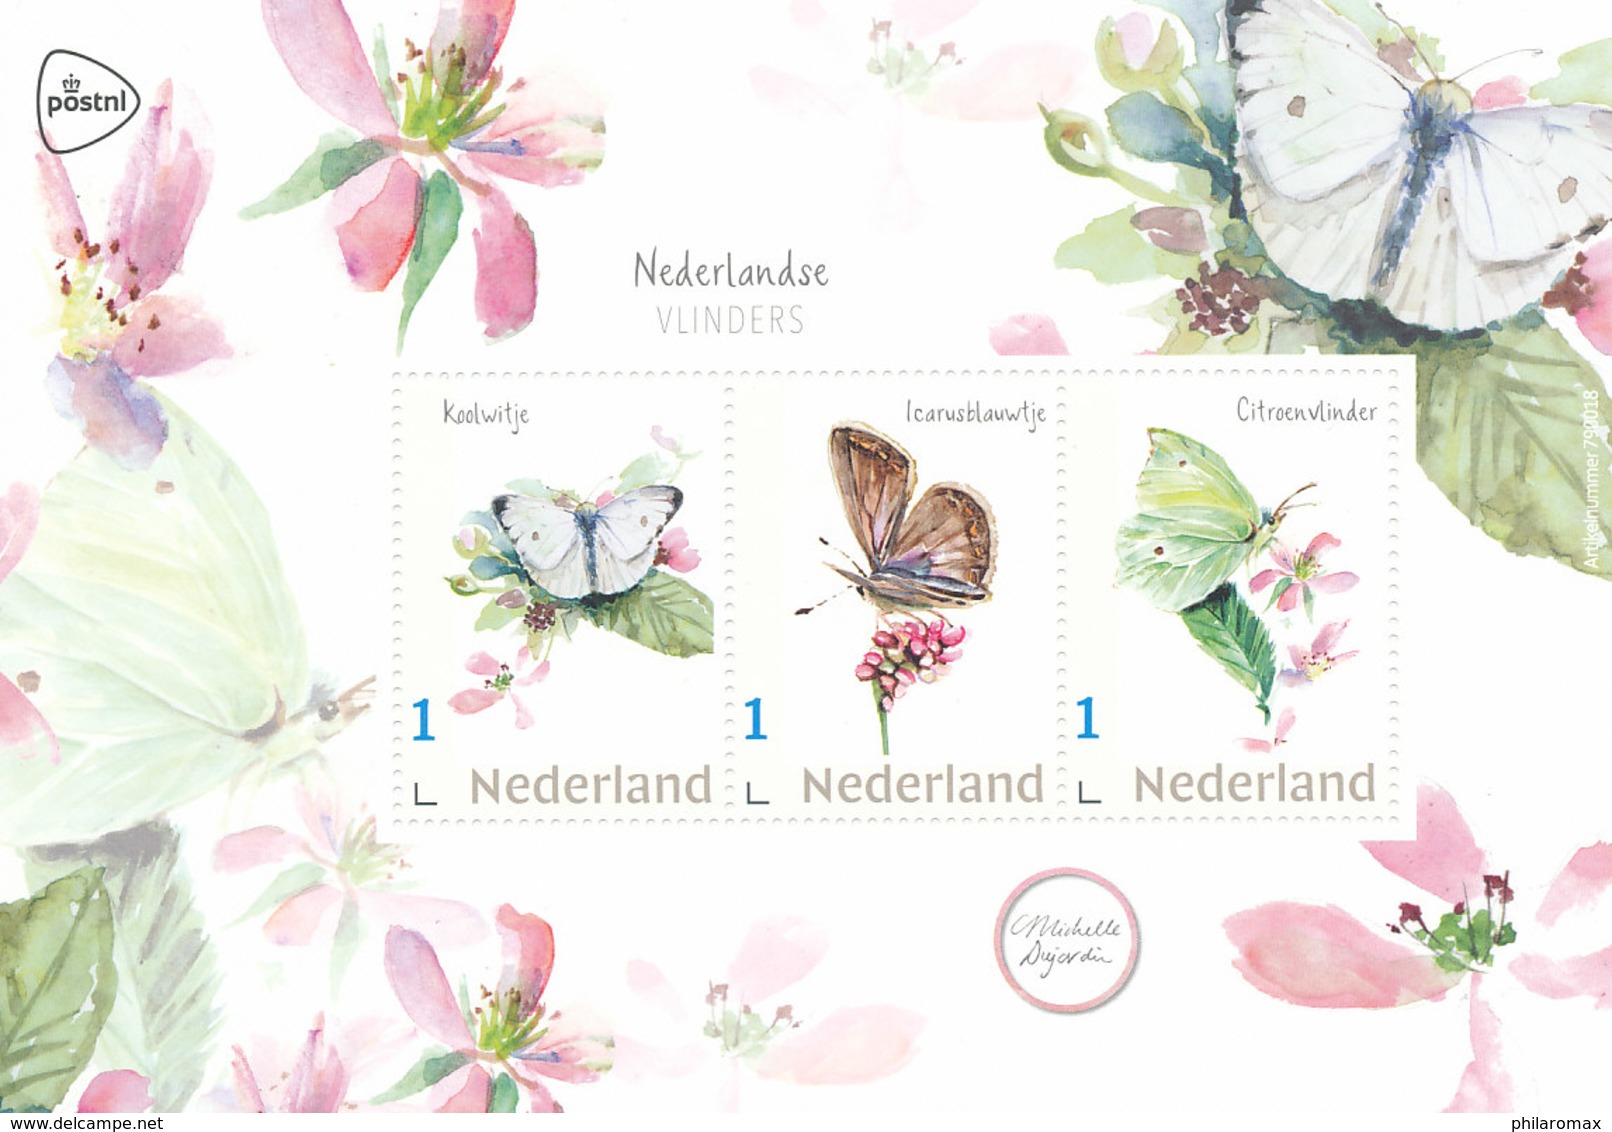 D37471 - 3 CARTES MAXIMUM CARDS RRR 2019 NETHERLANDS - THREE BUTTERFLIES - SPEC. POSTMARK - READ!! CP ORIGINAL - Farfalle